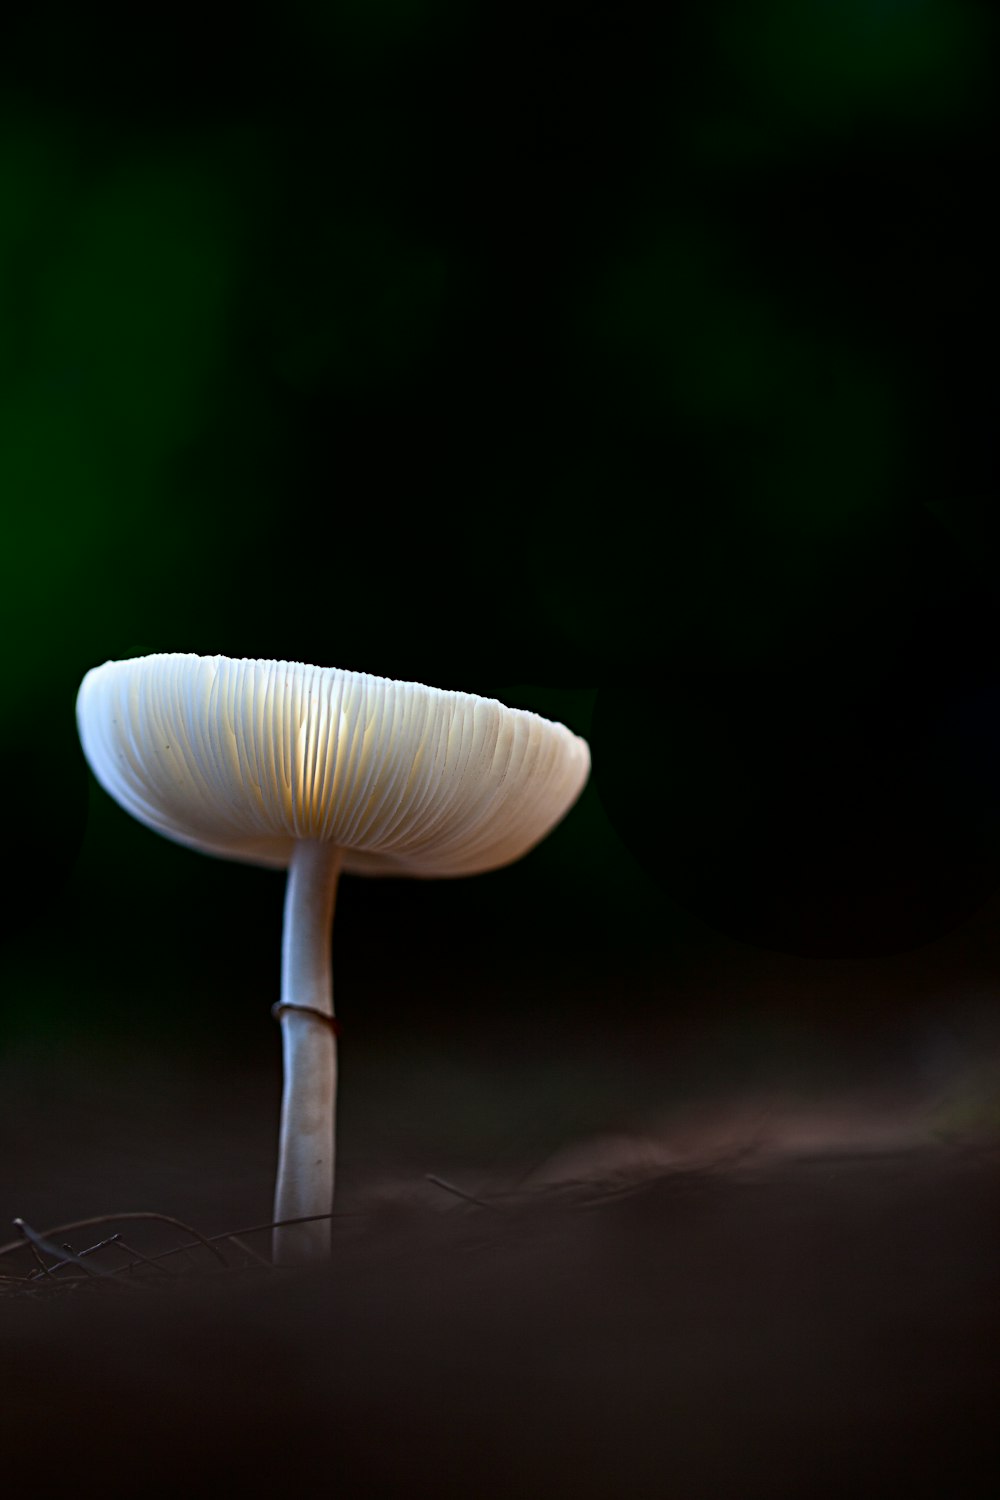 Blick auf winzigen weißen Pilz